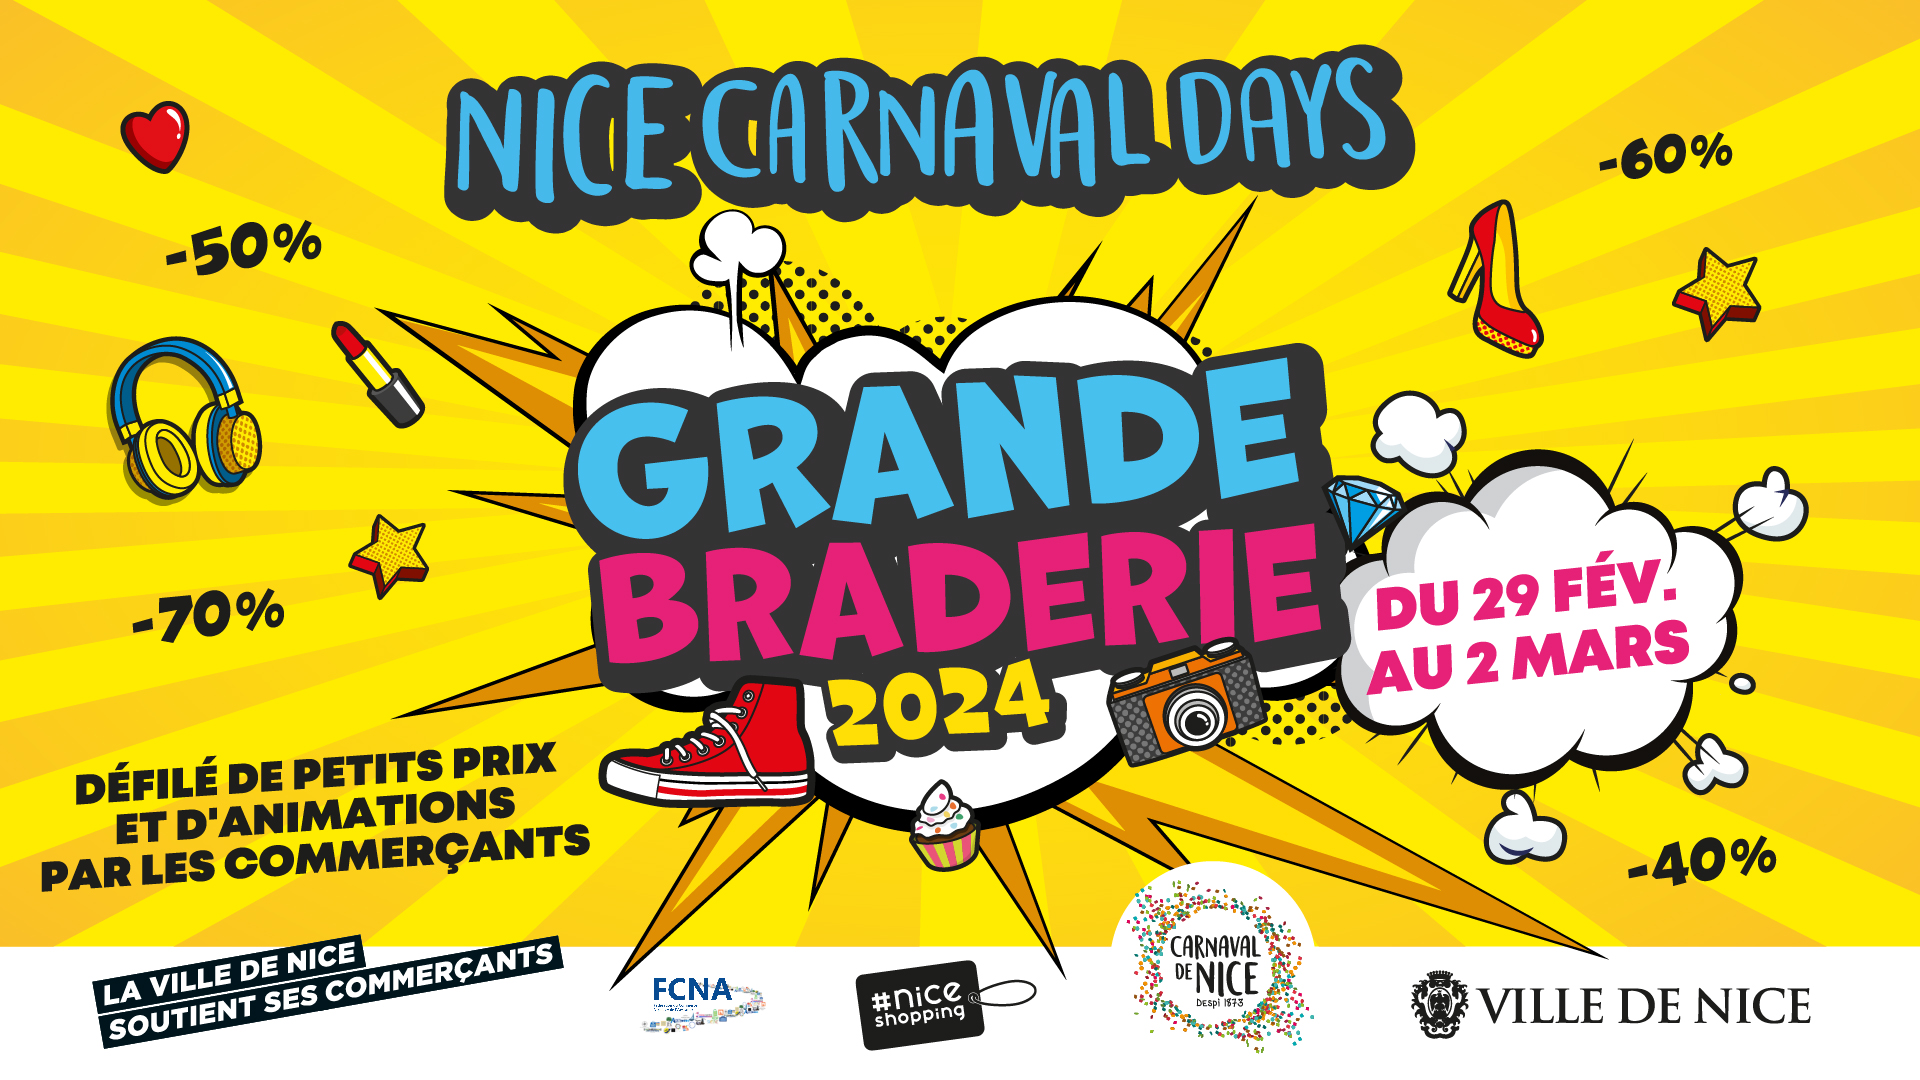 Les Nice Carnaval Days : une Grande Braderie sur 3 jours !